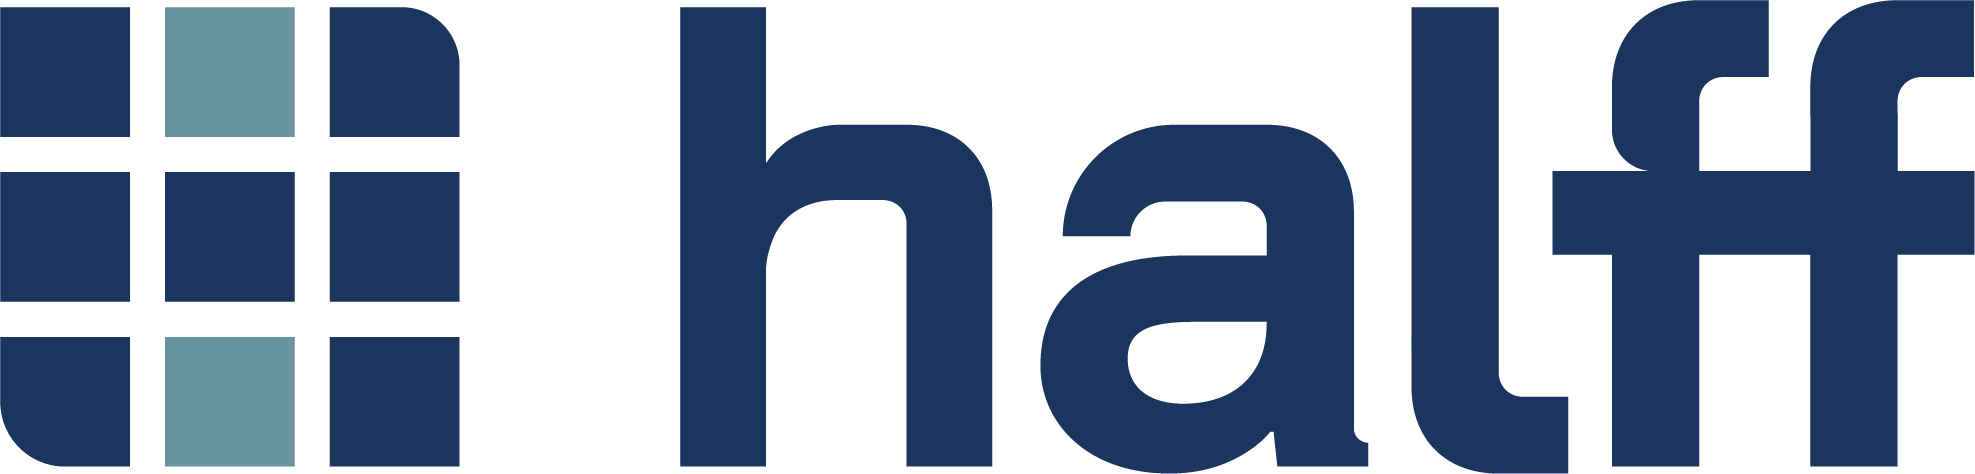 Halff Associates, Inc. logo